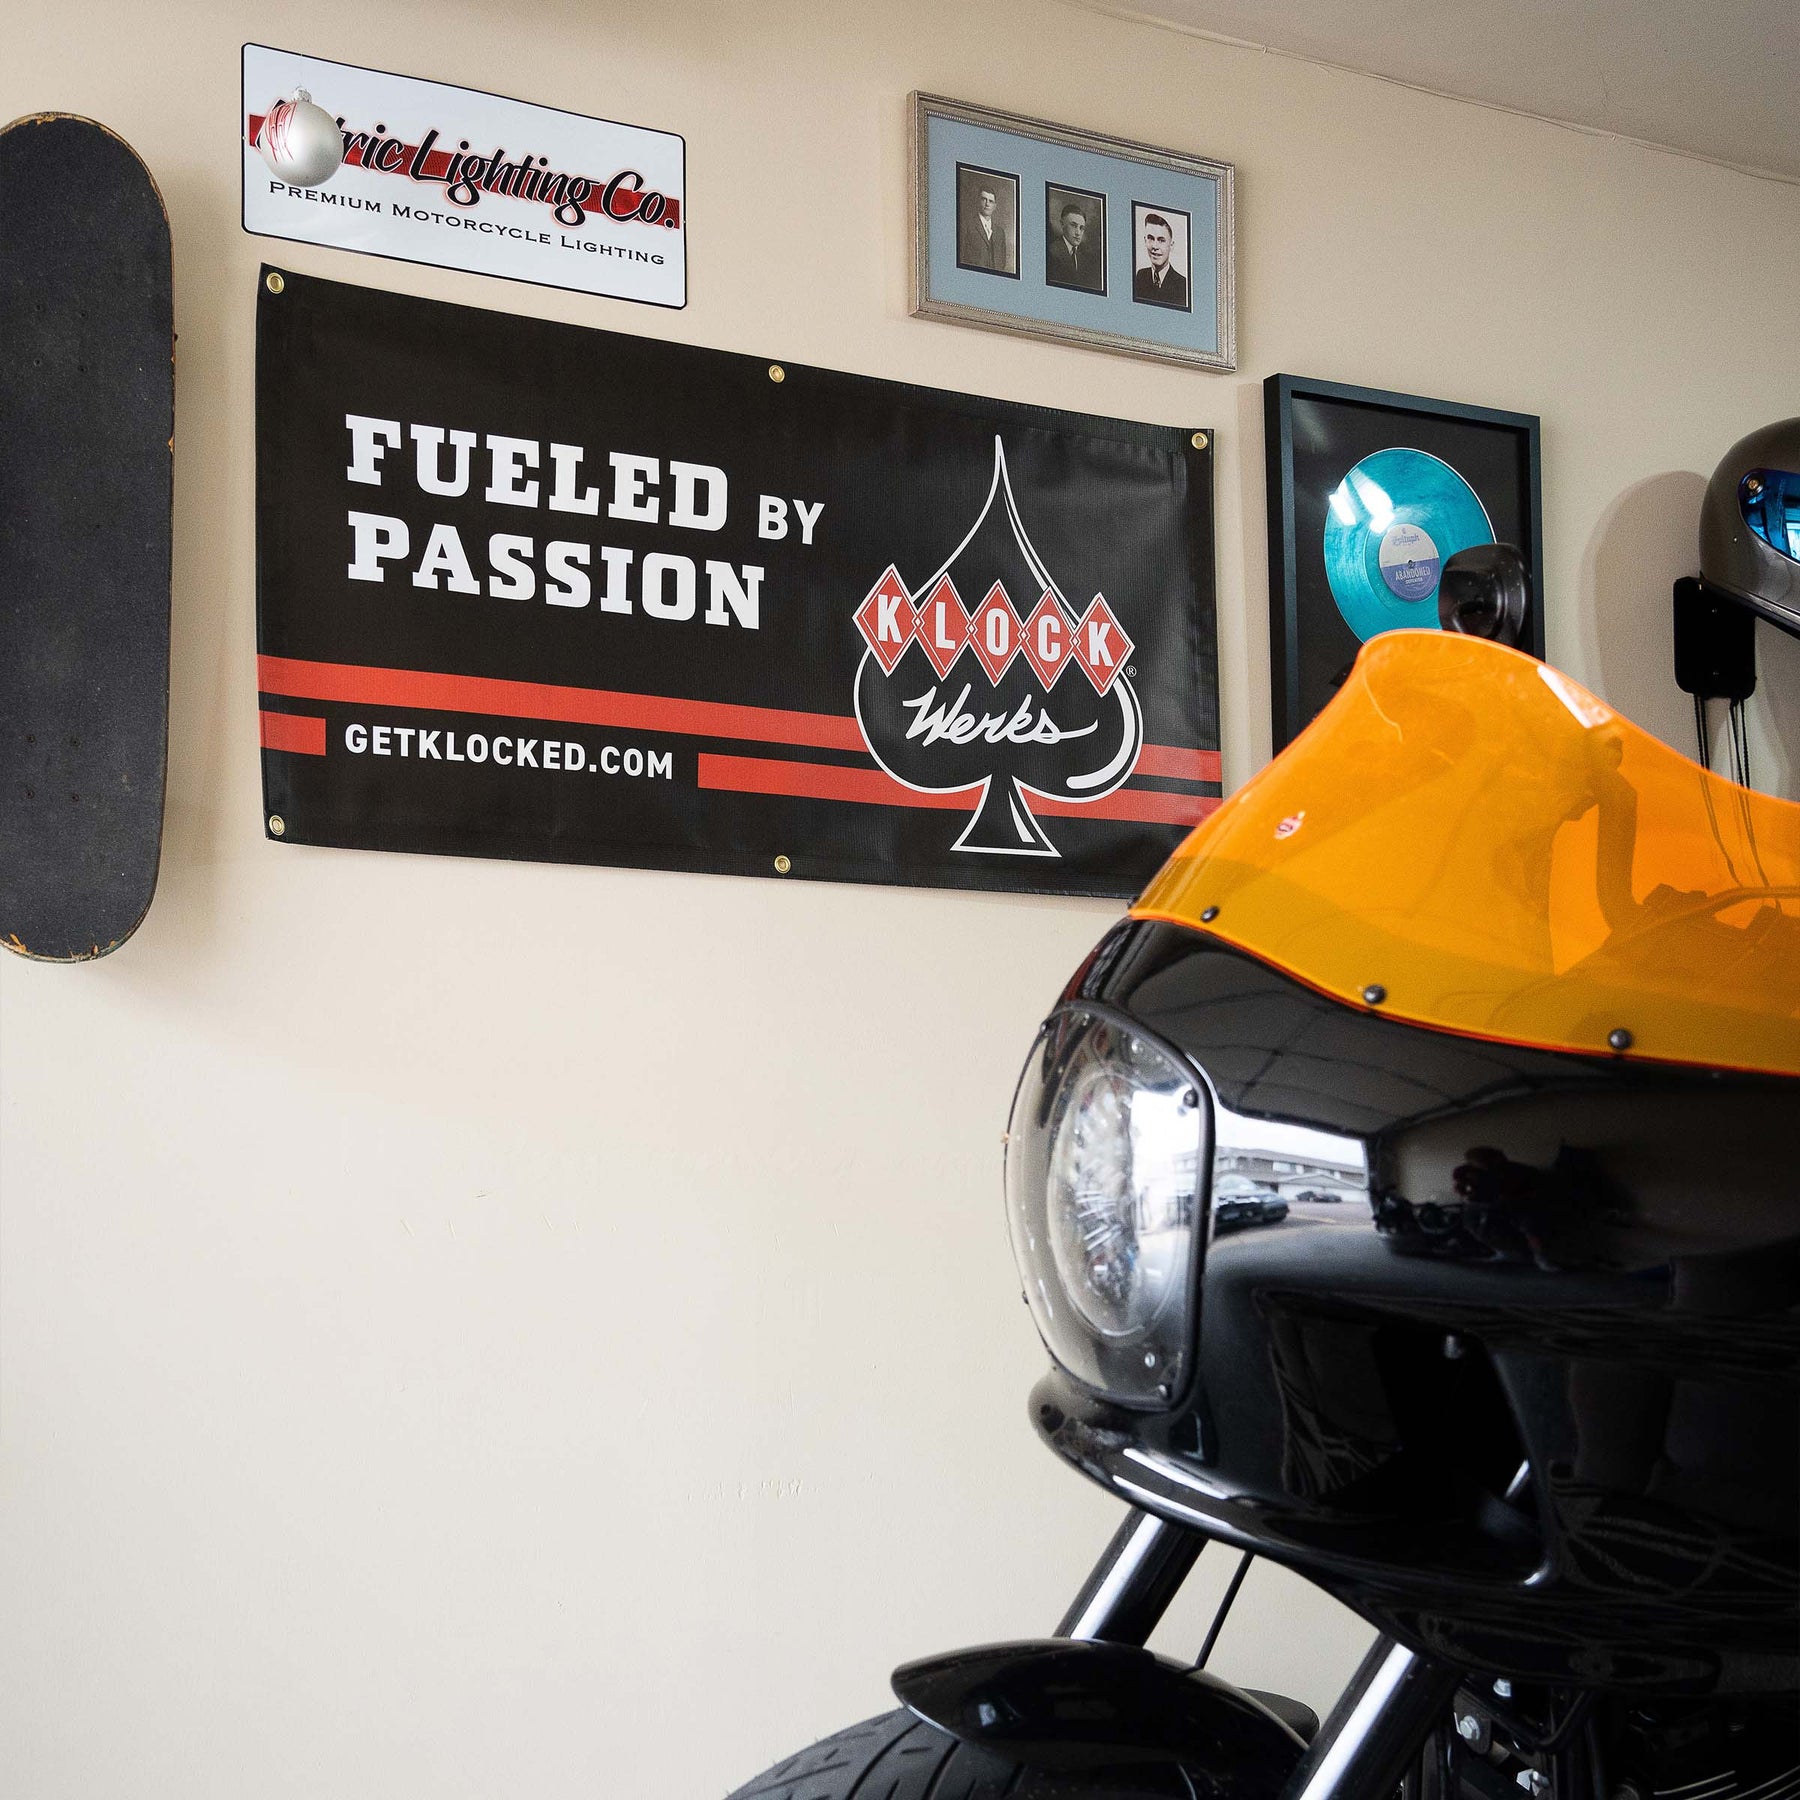 Fueled by Passion Klock Werks Shop or Garage Outdoor Banner shown in garage